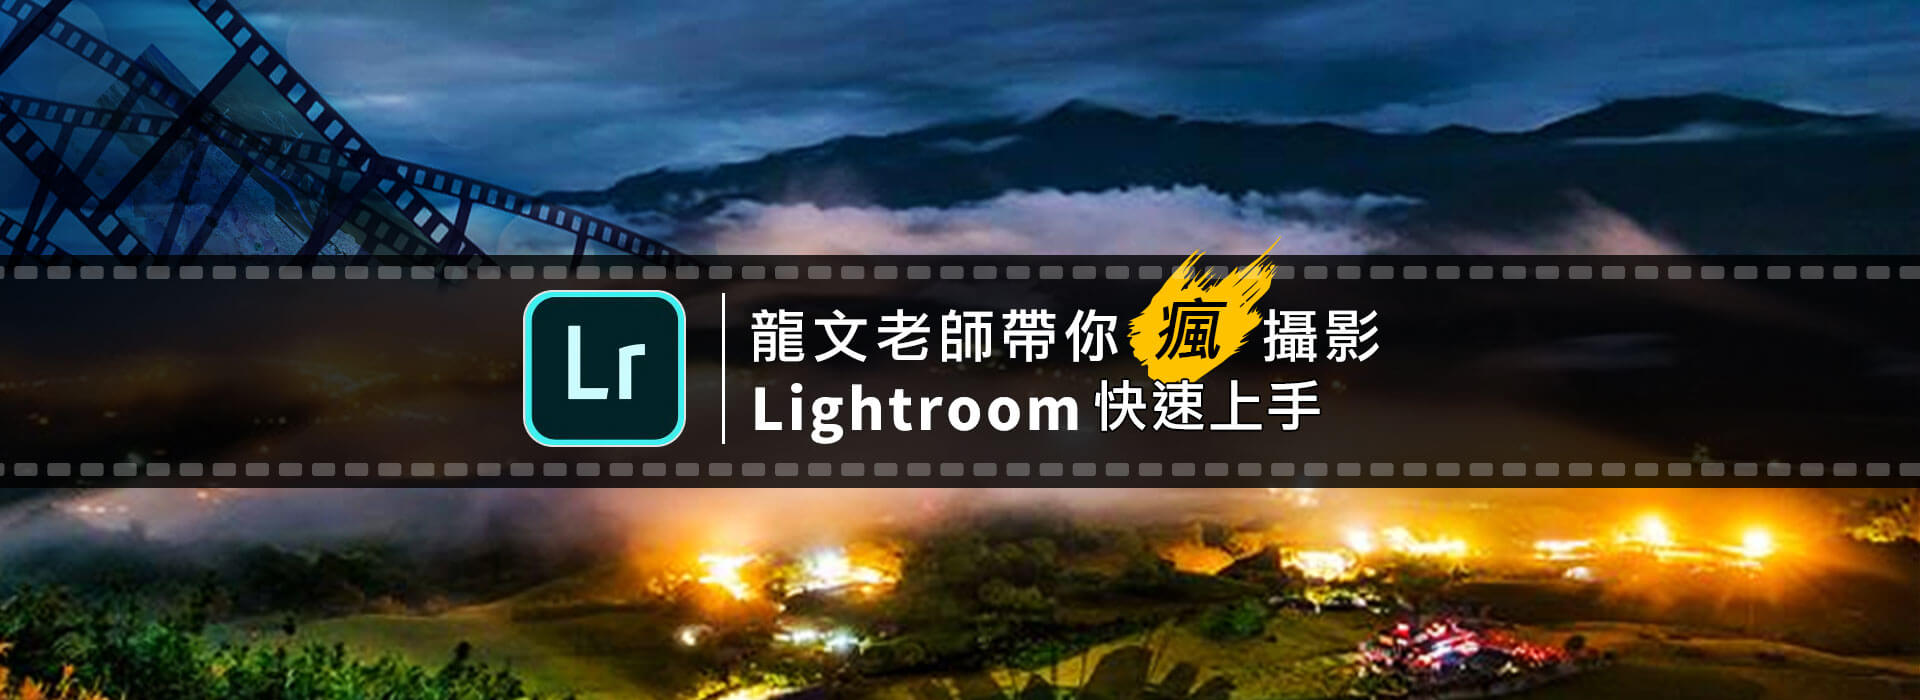 龍文老師帶你瘋攝影-LightRoom快速上手